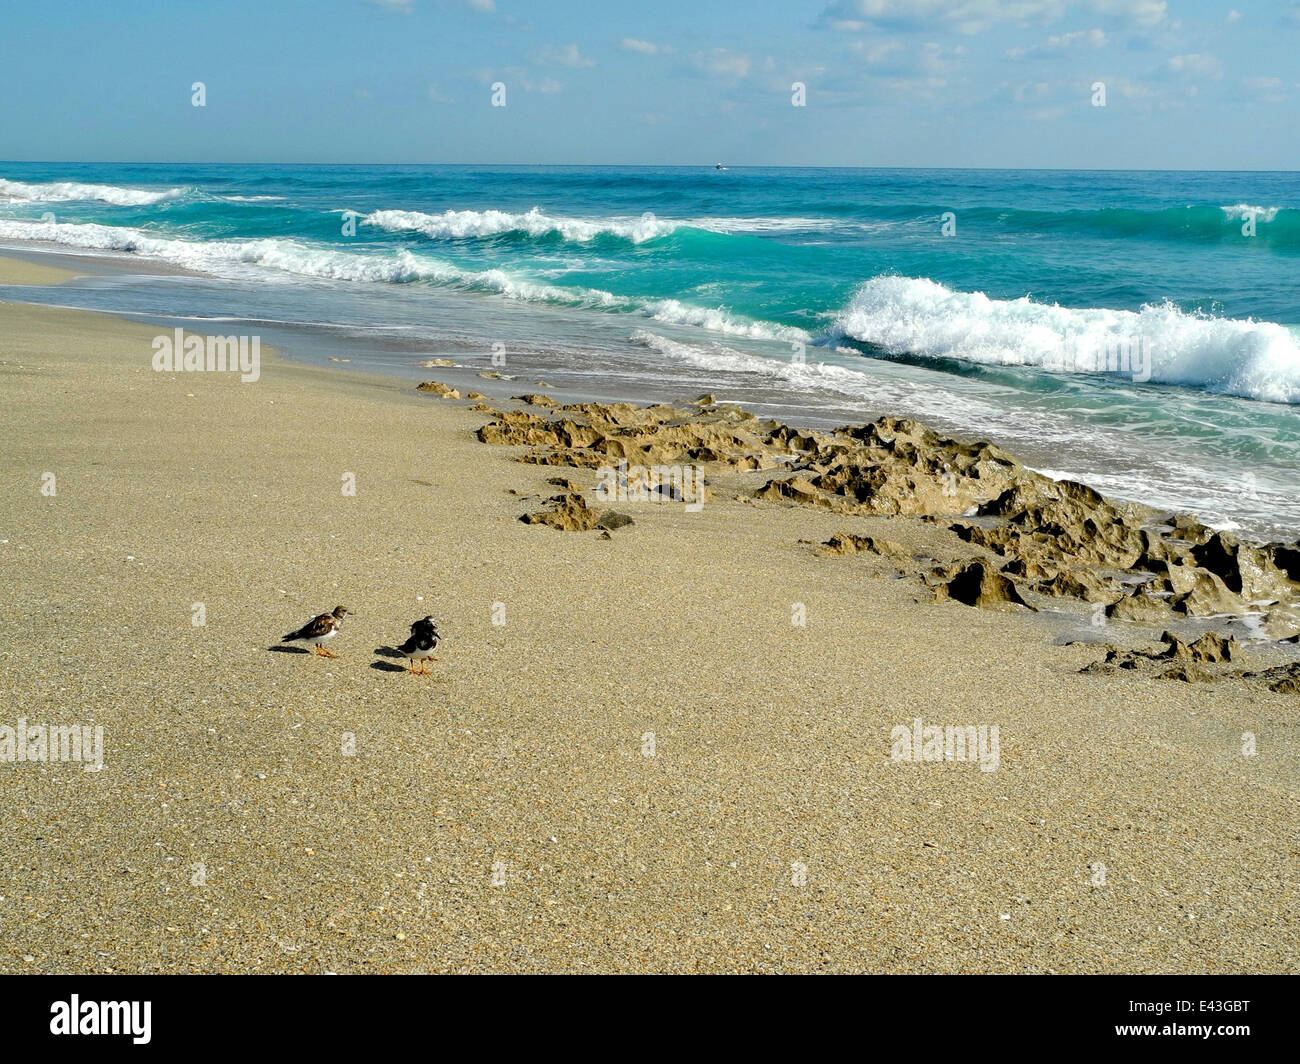 Les oiseaux de mer galopent le long de la plage, les petits oiseaux se précipitent d'avant en arrière sur le sable à la recherche de nourriture. Banque D'Images